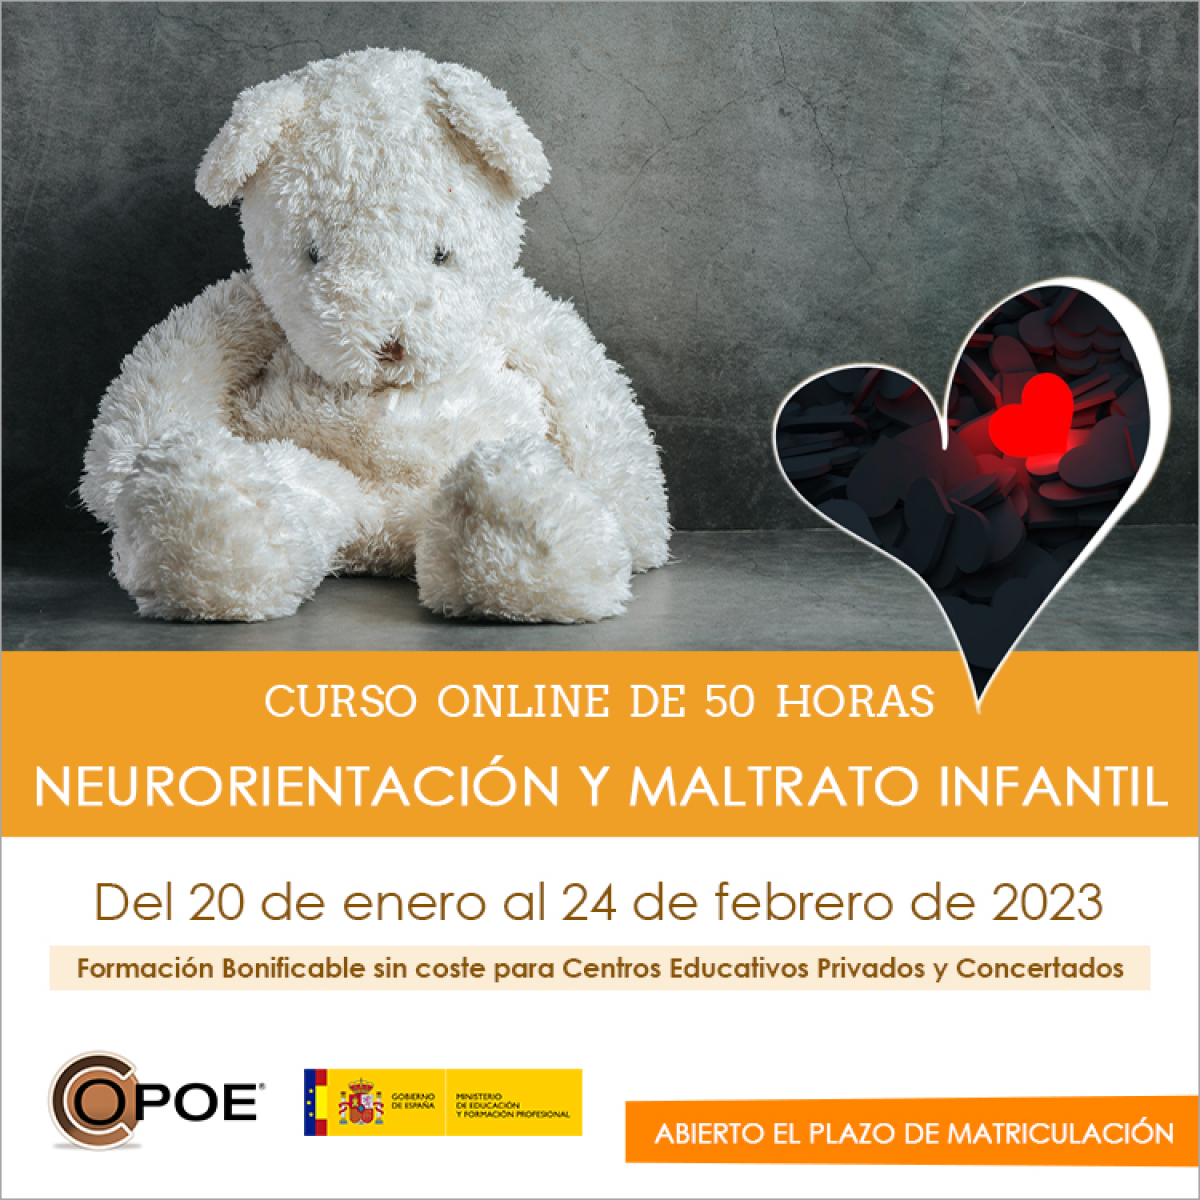 Curso online de COPOE &quot;Neurorientación y maltrato infantil”, del 20 de enero al 24 de febrero de 2023